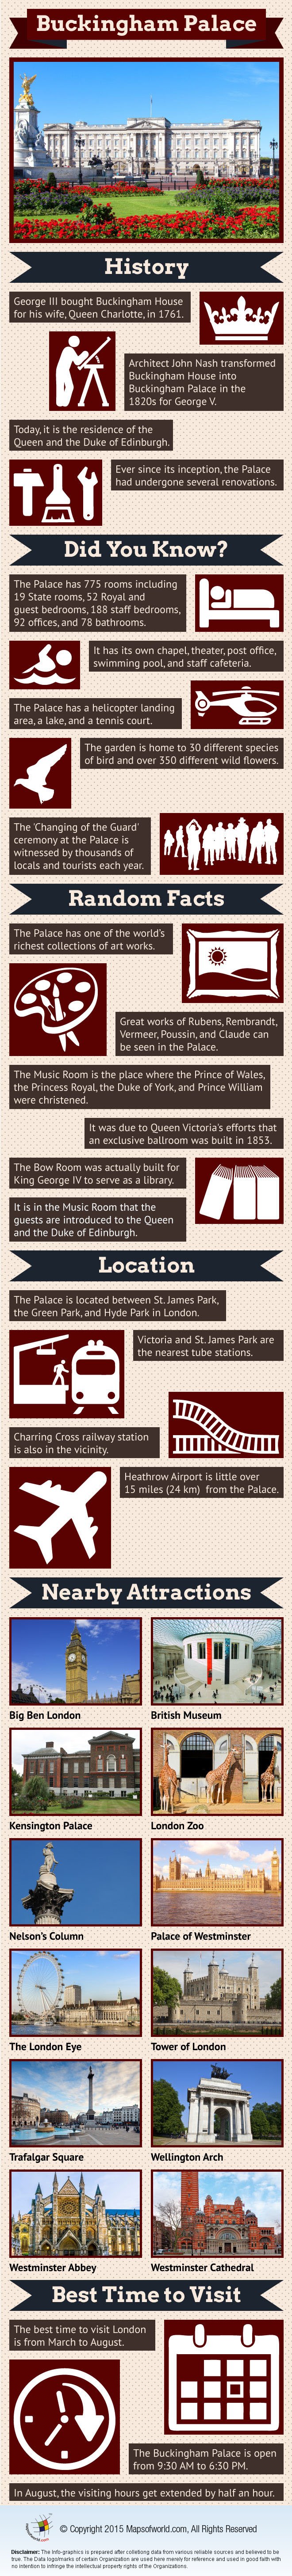 Buckingham Palace Infographic